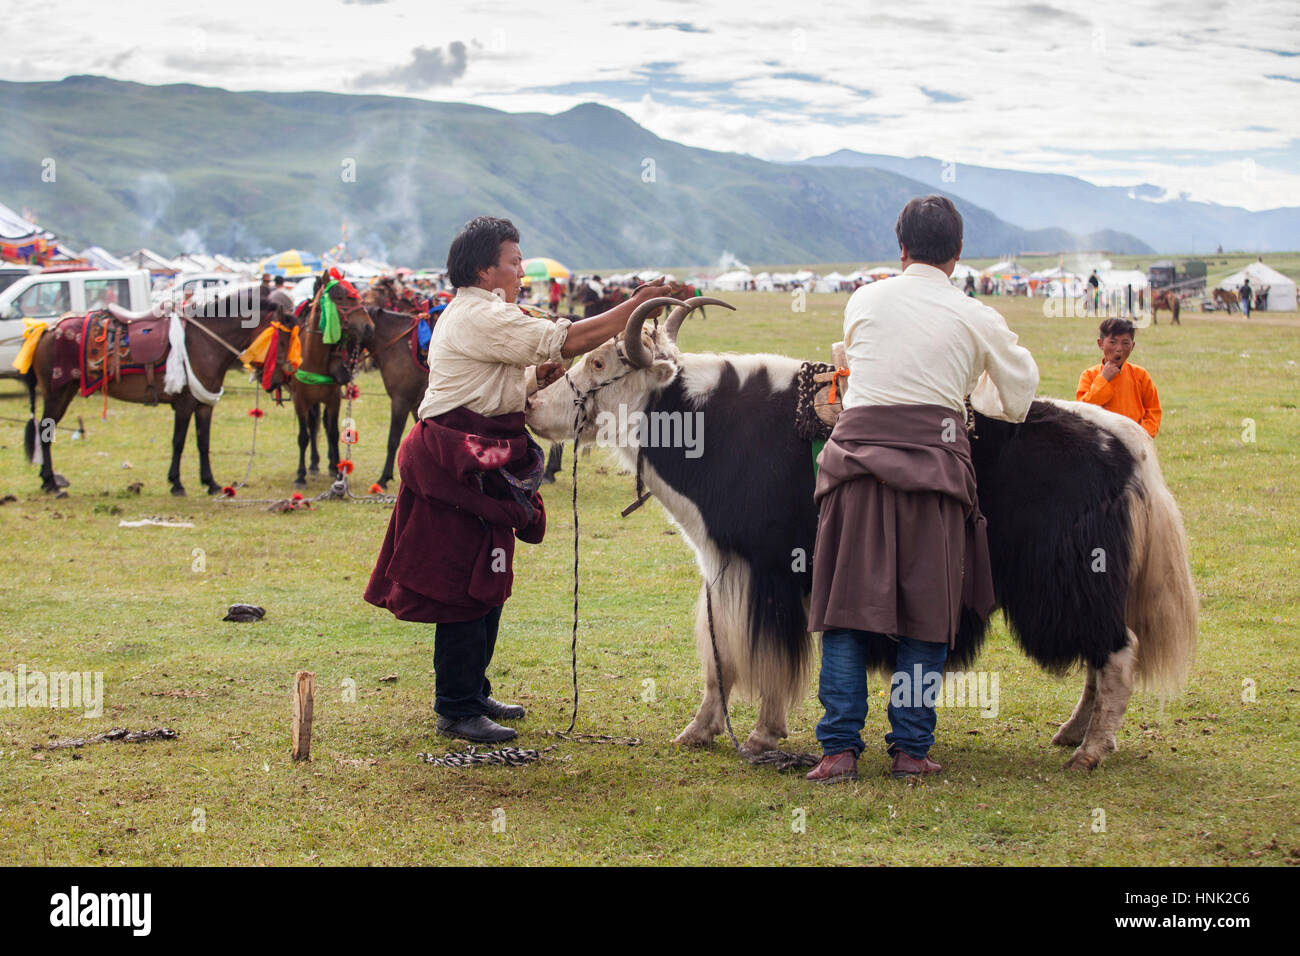 Les Khampas ethnies participent à la Fête du Cheval Manigango dans la région du Plateau tibétain dans le Sichuan, Chine Banque D'Images